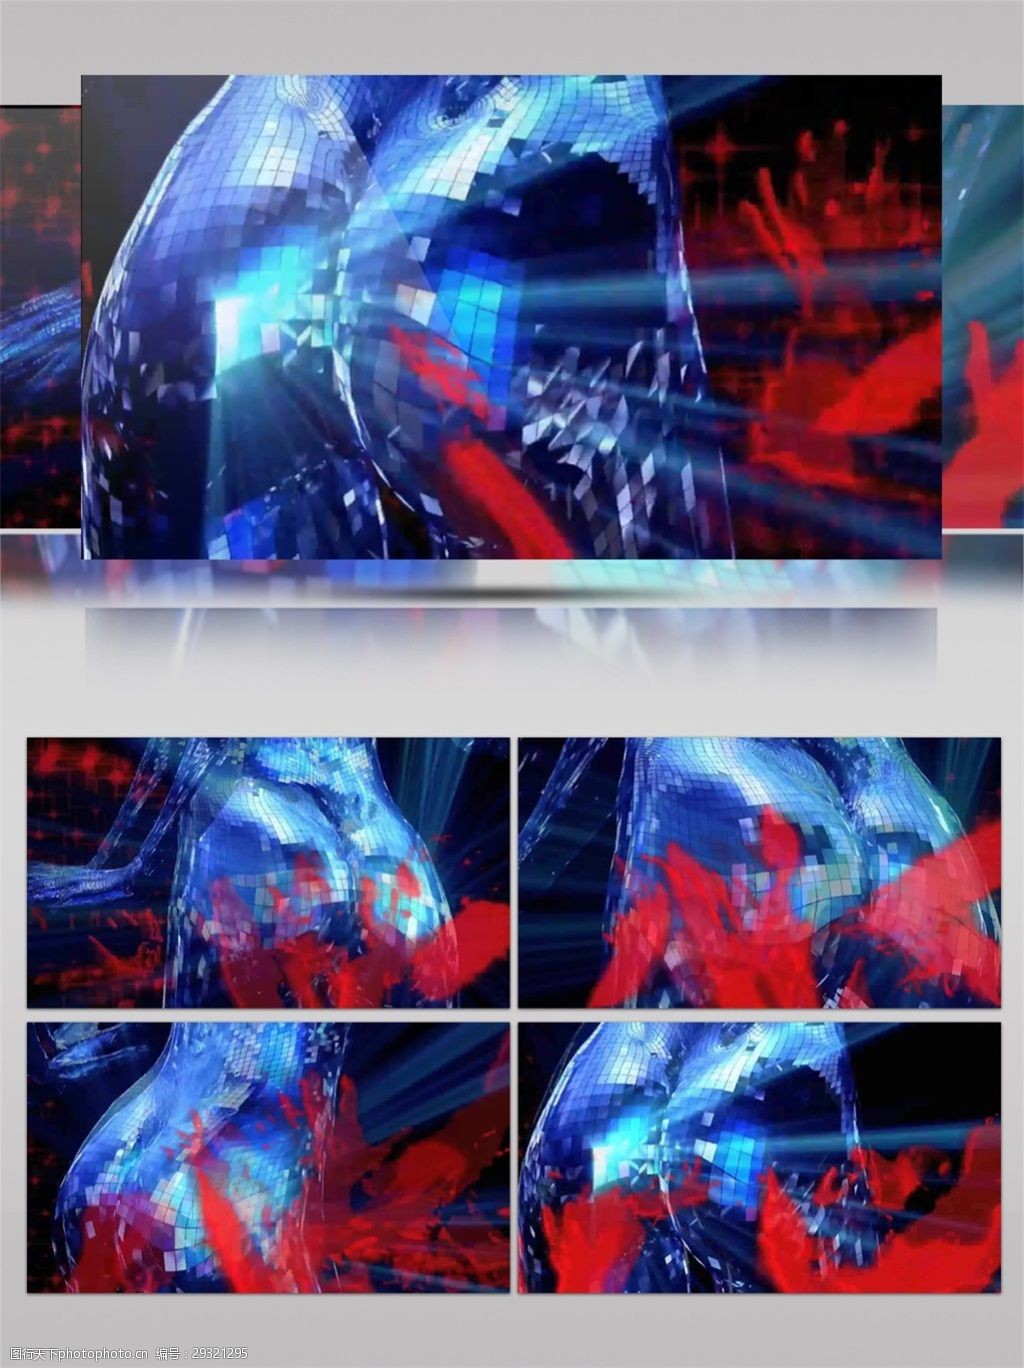 关键词:蓝色炫酷人物形象高清视频素材 动态视频素材 科幻 科技蓝色